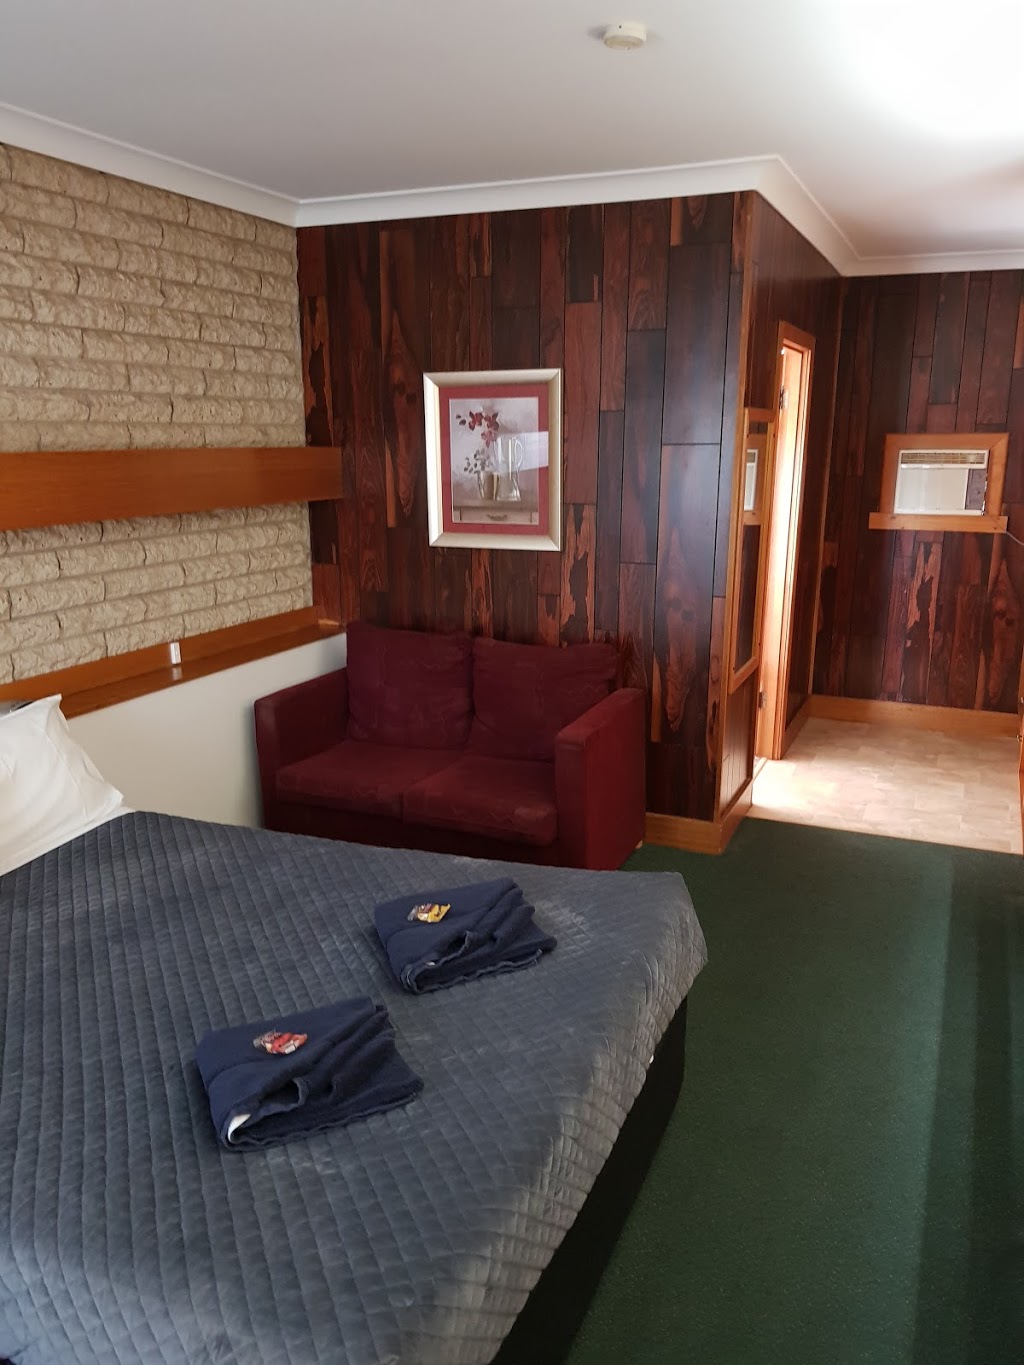 Glynlea Motel | lodging | 26-28 Stawell Rd, Horsham VIC 3400, Australia | 0353820145 OR +61 3 5382 0145